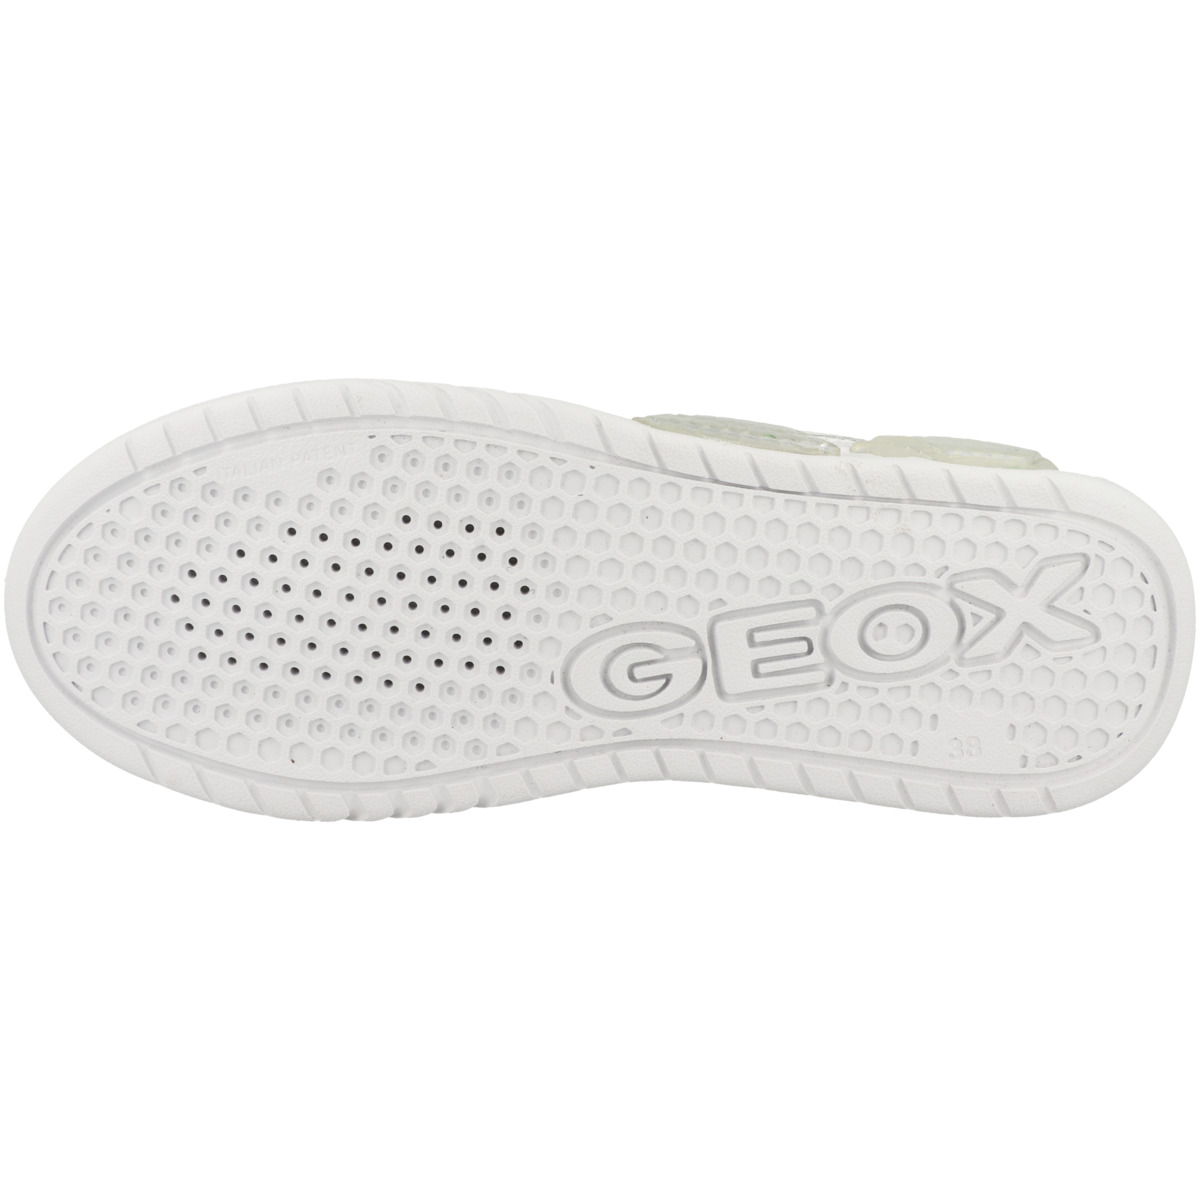 Geox J Illuminus Sneaker low B. B weiss